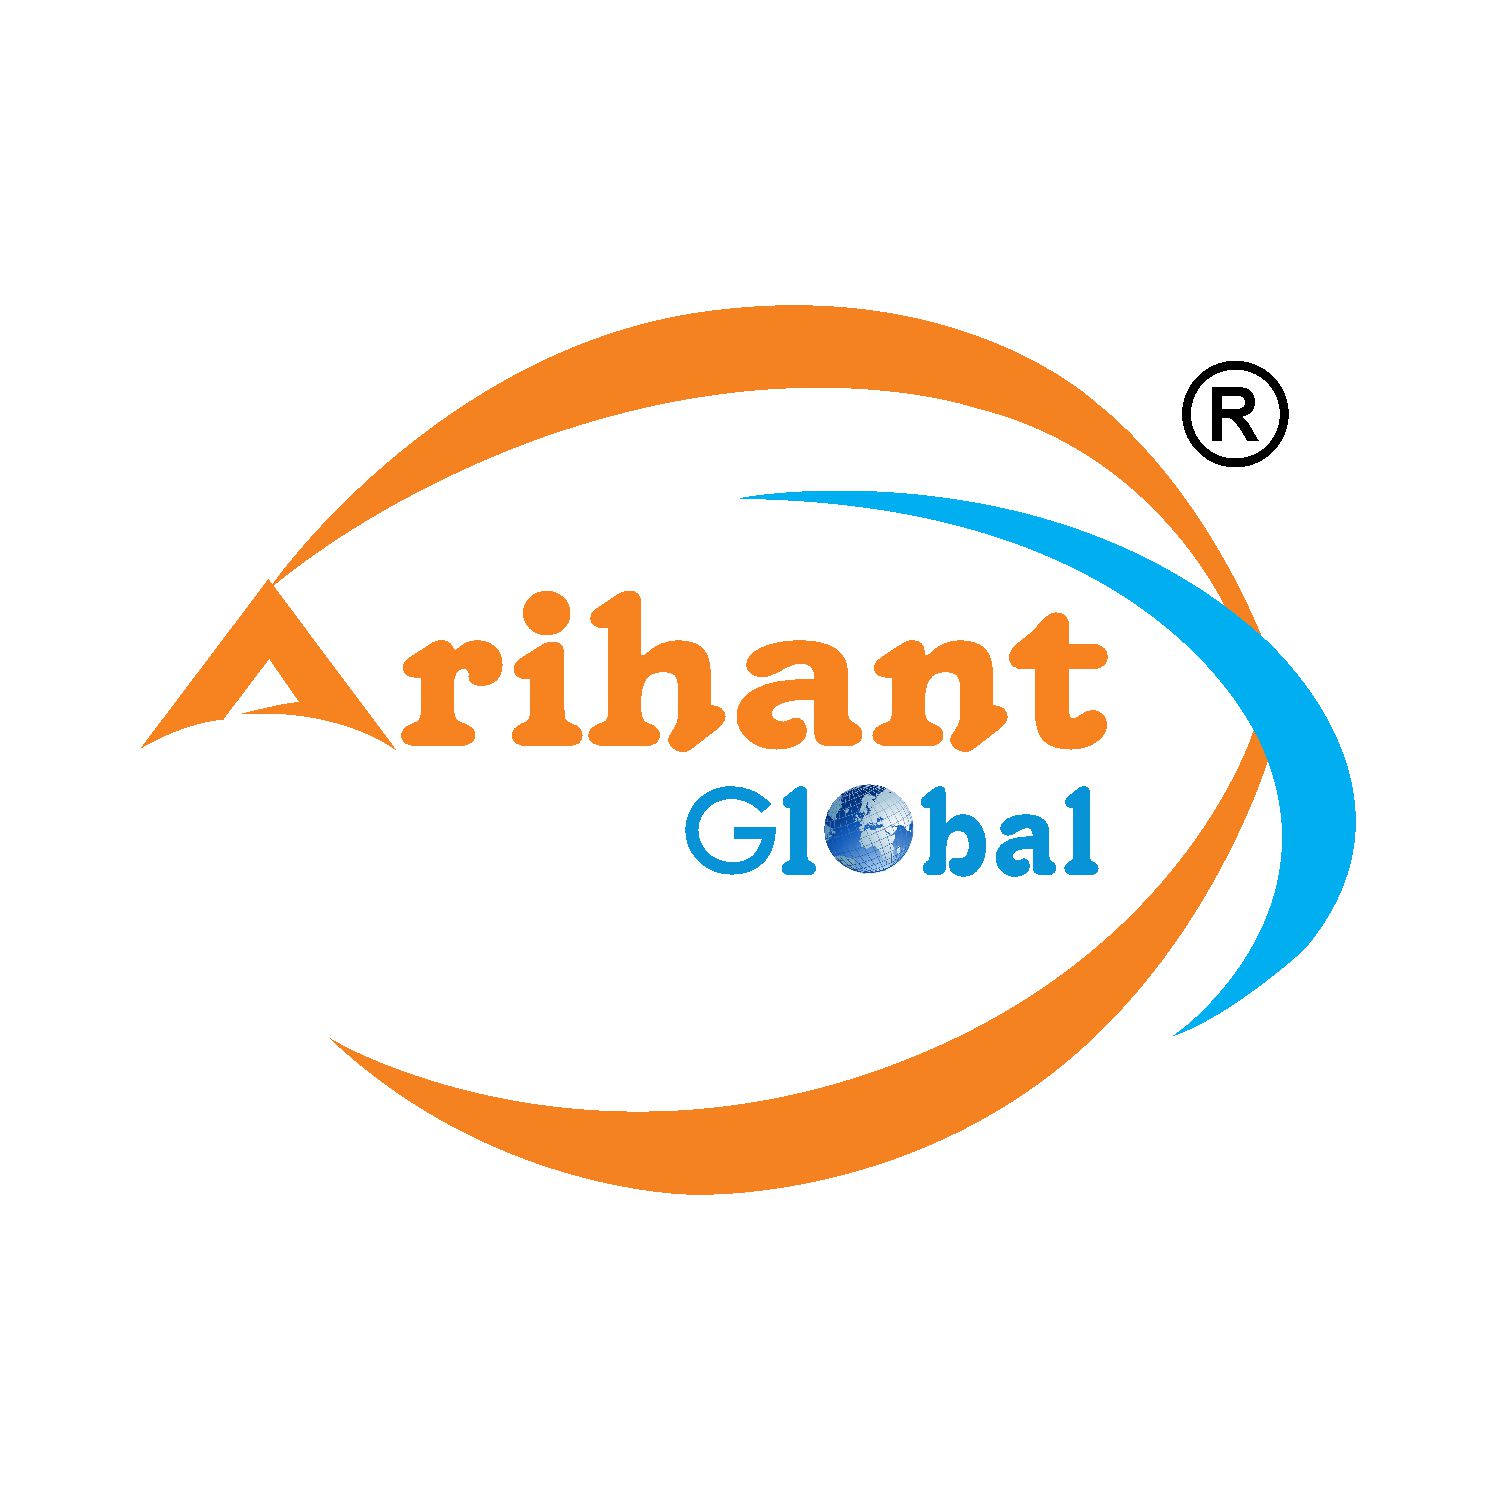 Business logo of Arihant Global